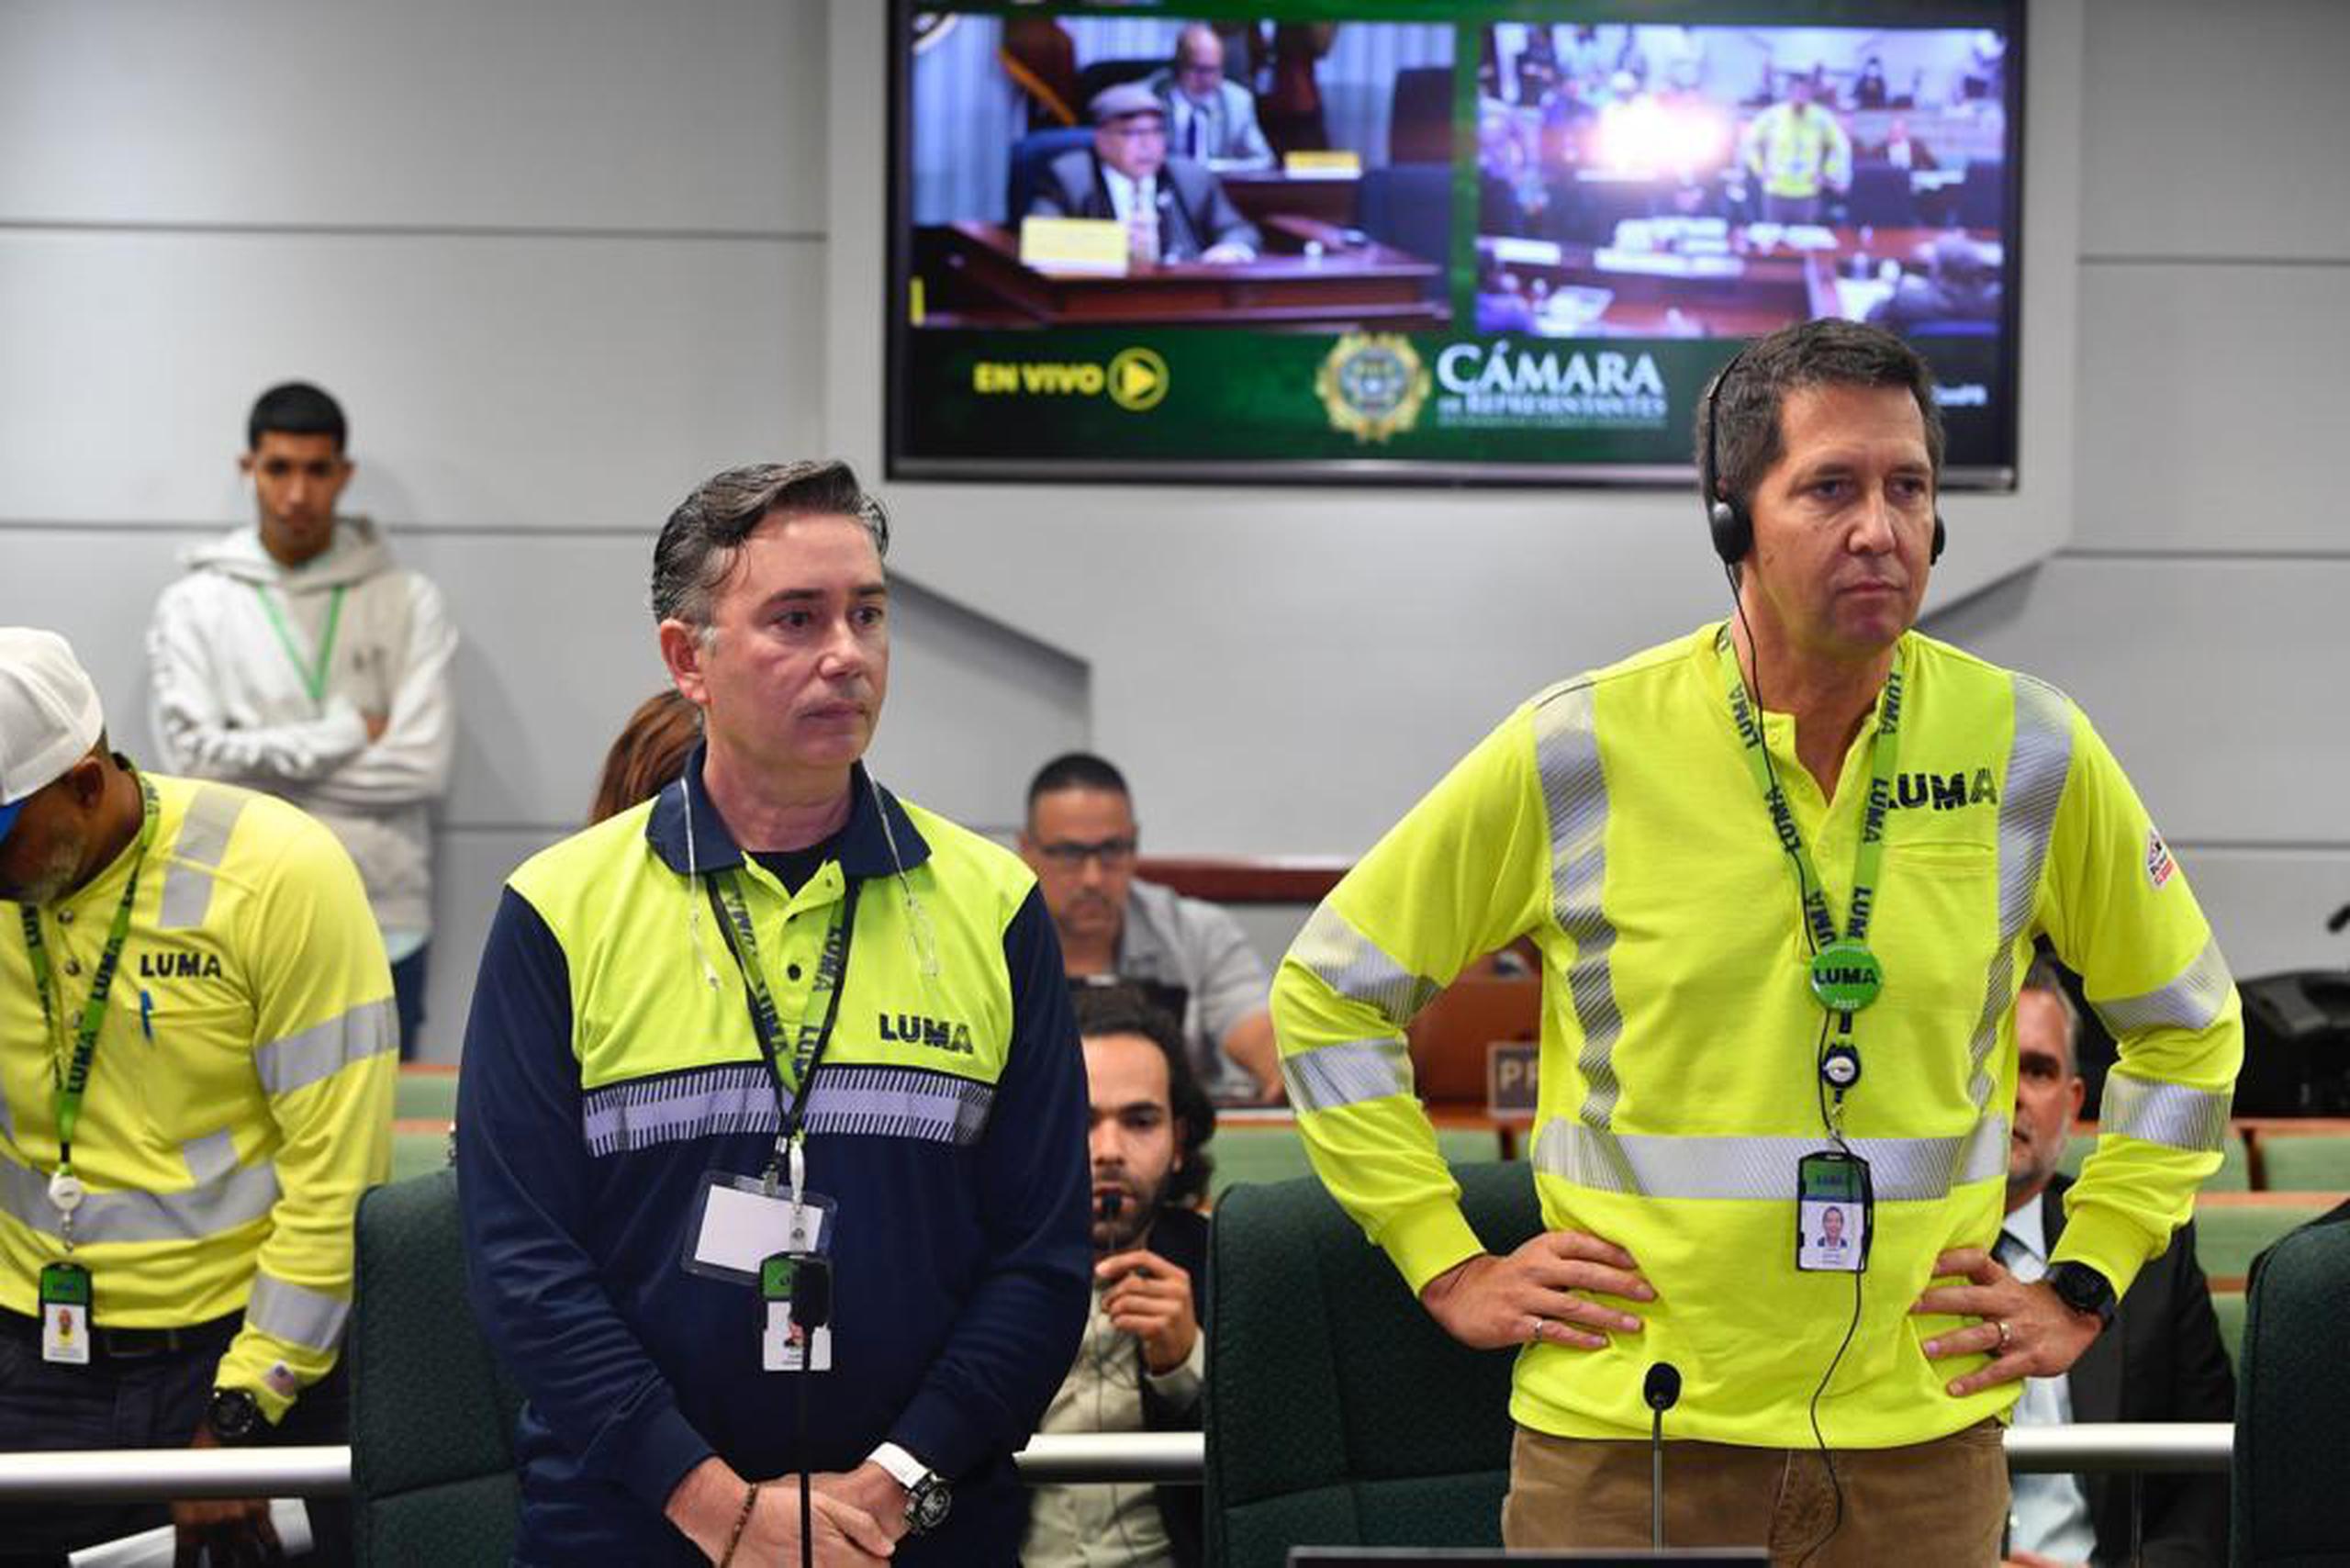 El presidente de LUMA Energy (derecha), Wayne Stensby, participó de una audiencia pública de la Comisión de Energía de la Cámara junto al ingeniero boricua, Daniel Hernández (izquierda).